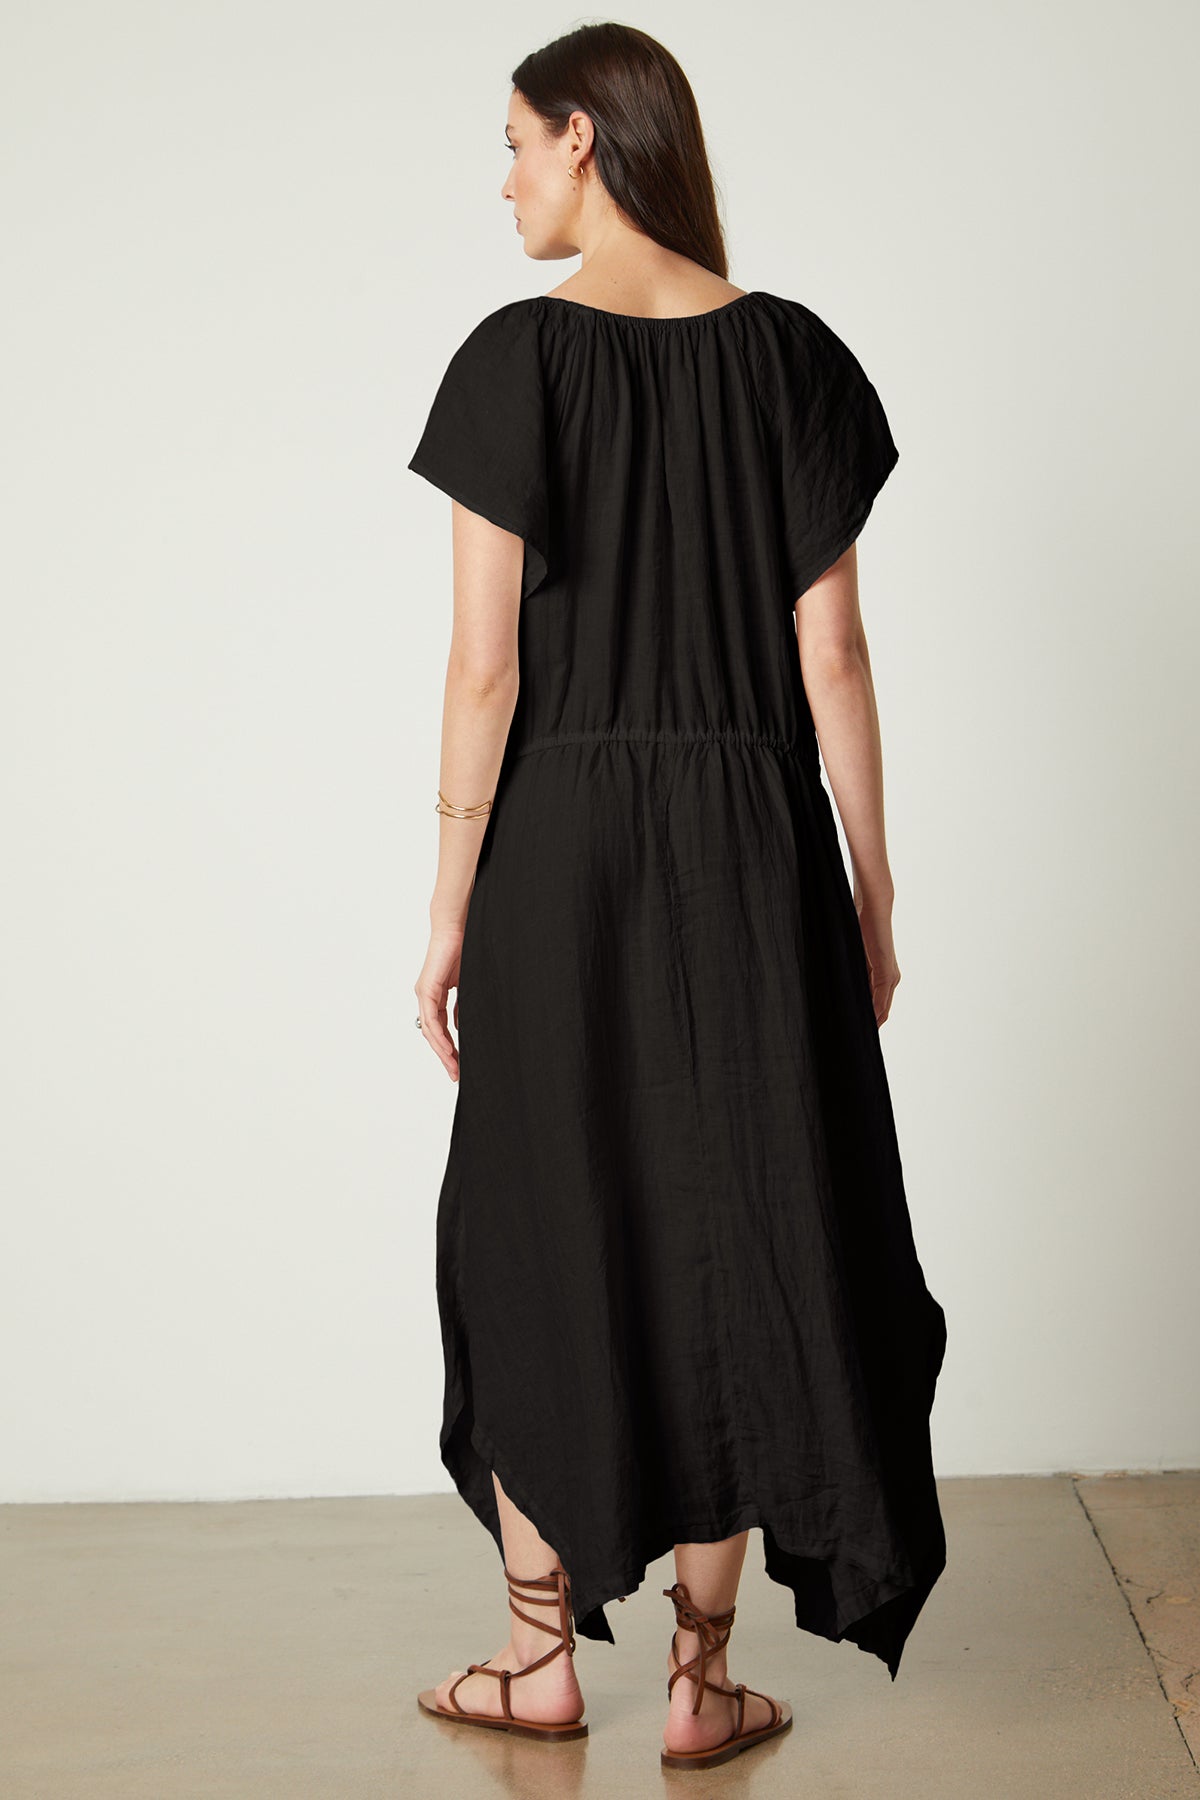 Debbie Linen Dress in black full length back-26143134646465